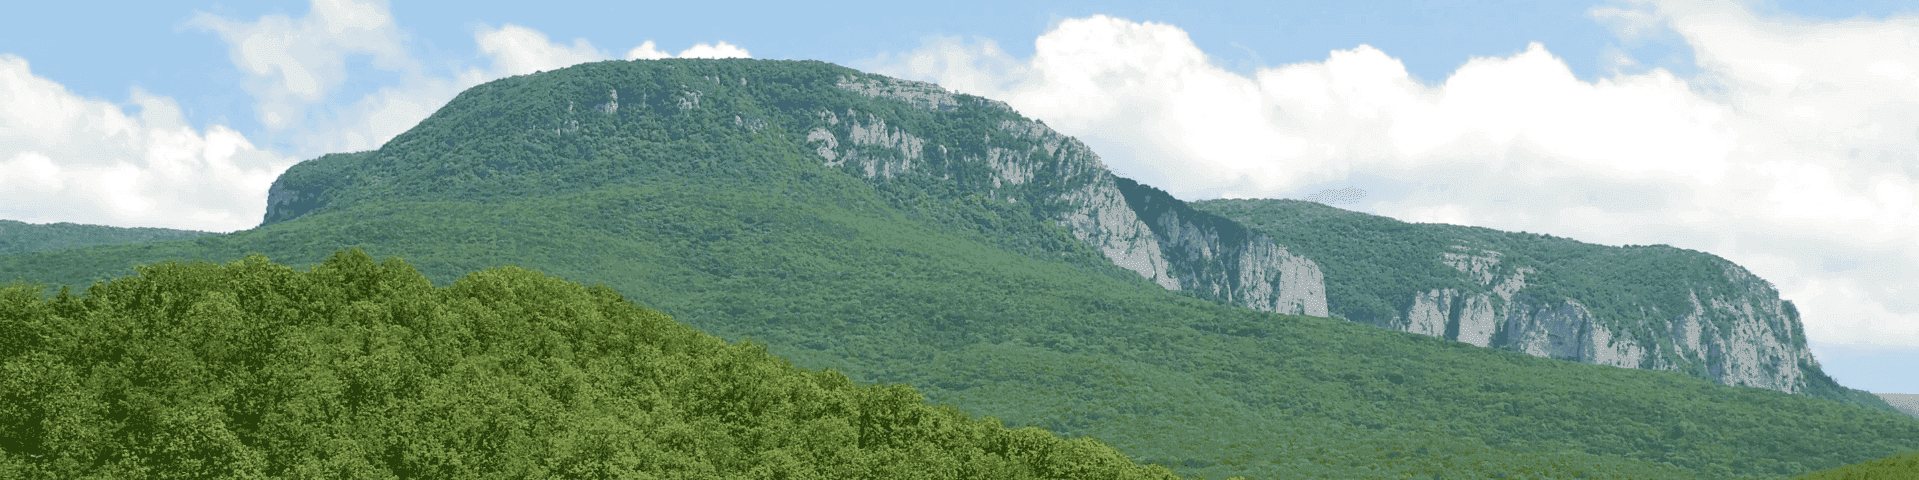 Гора бойко в крыму фото